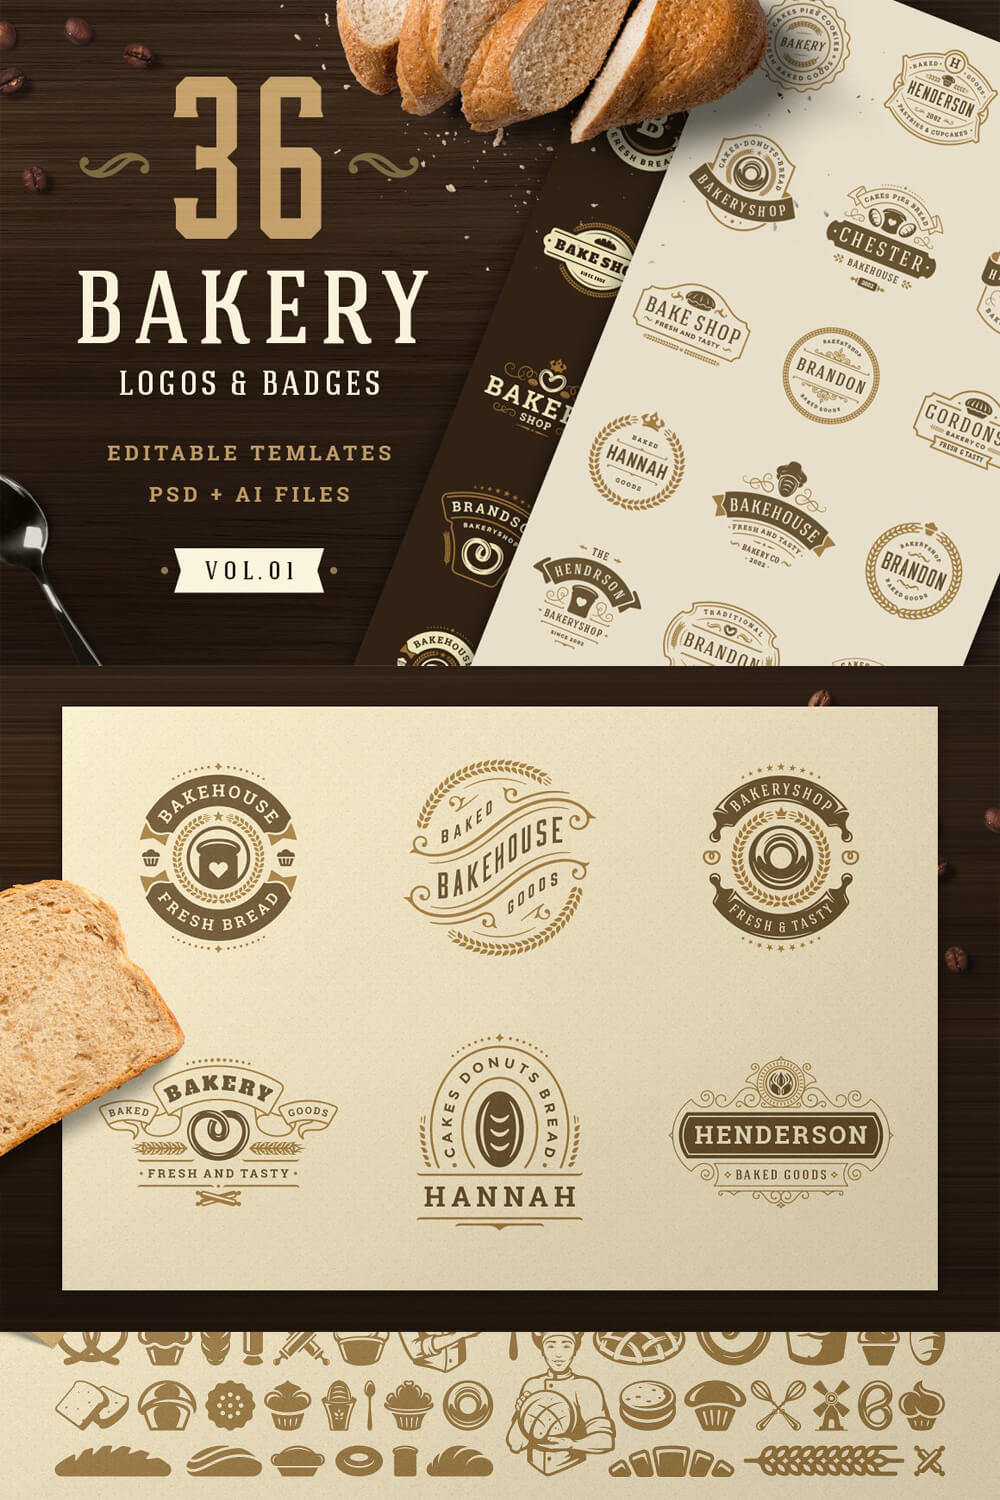 36 Bakery Logos & Badges for Pinterest.